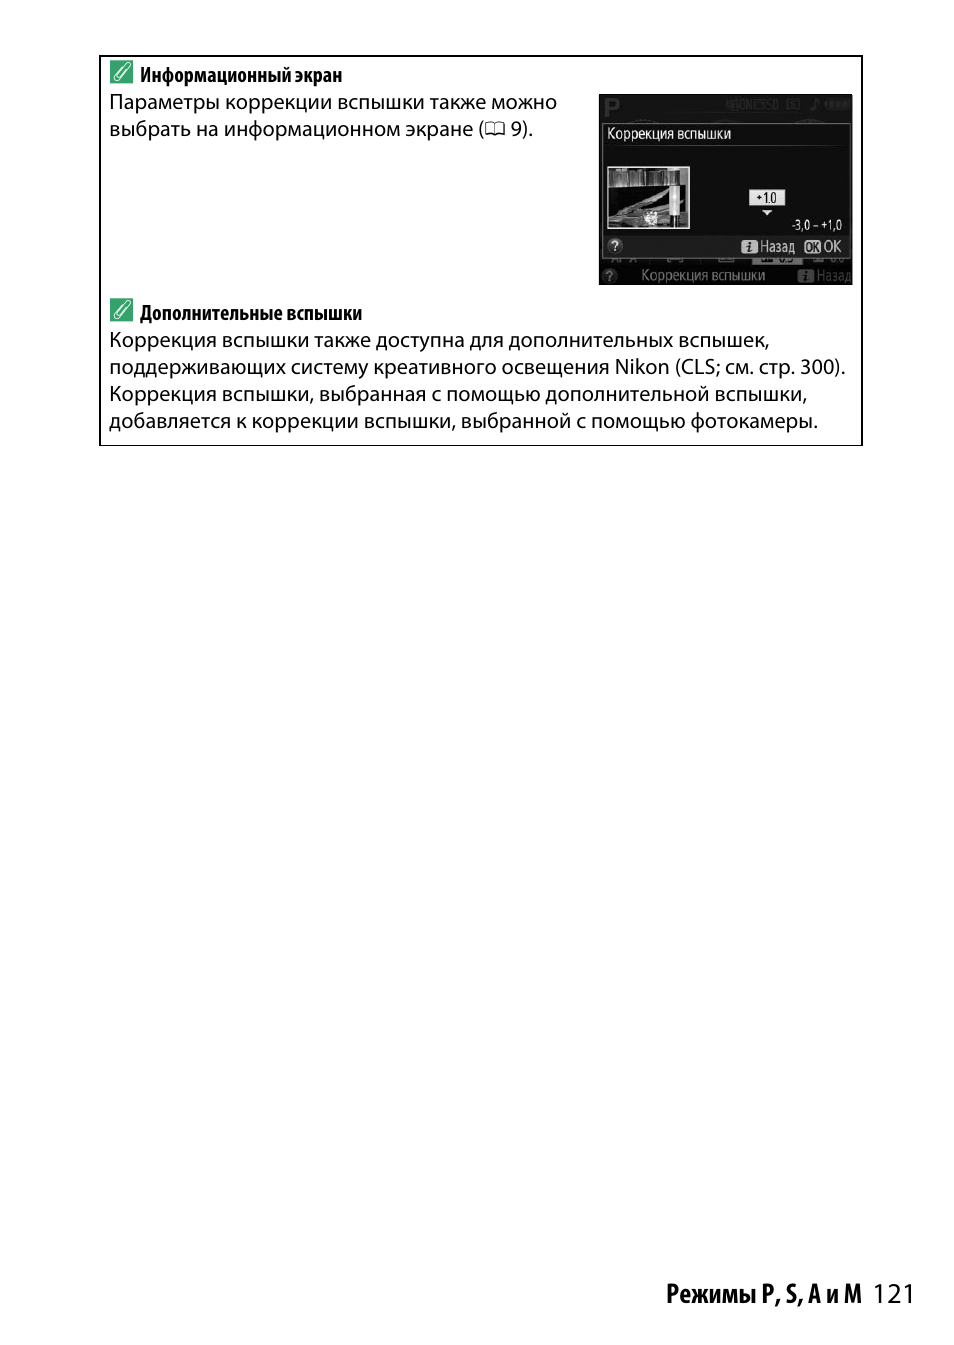 121 режимы p, s, a и m a | Инструкция по эксплуатации Nikon D3300 | Страница 141 / 392